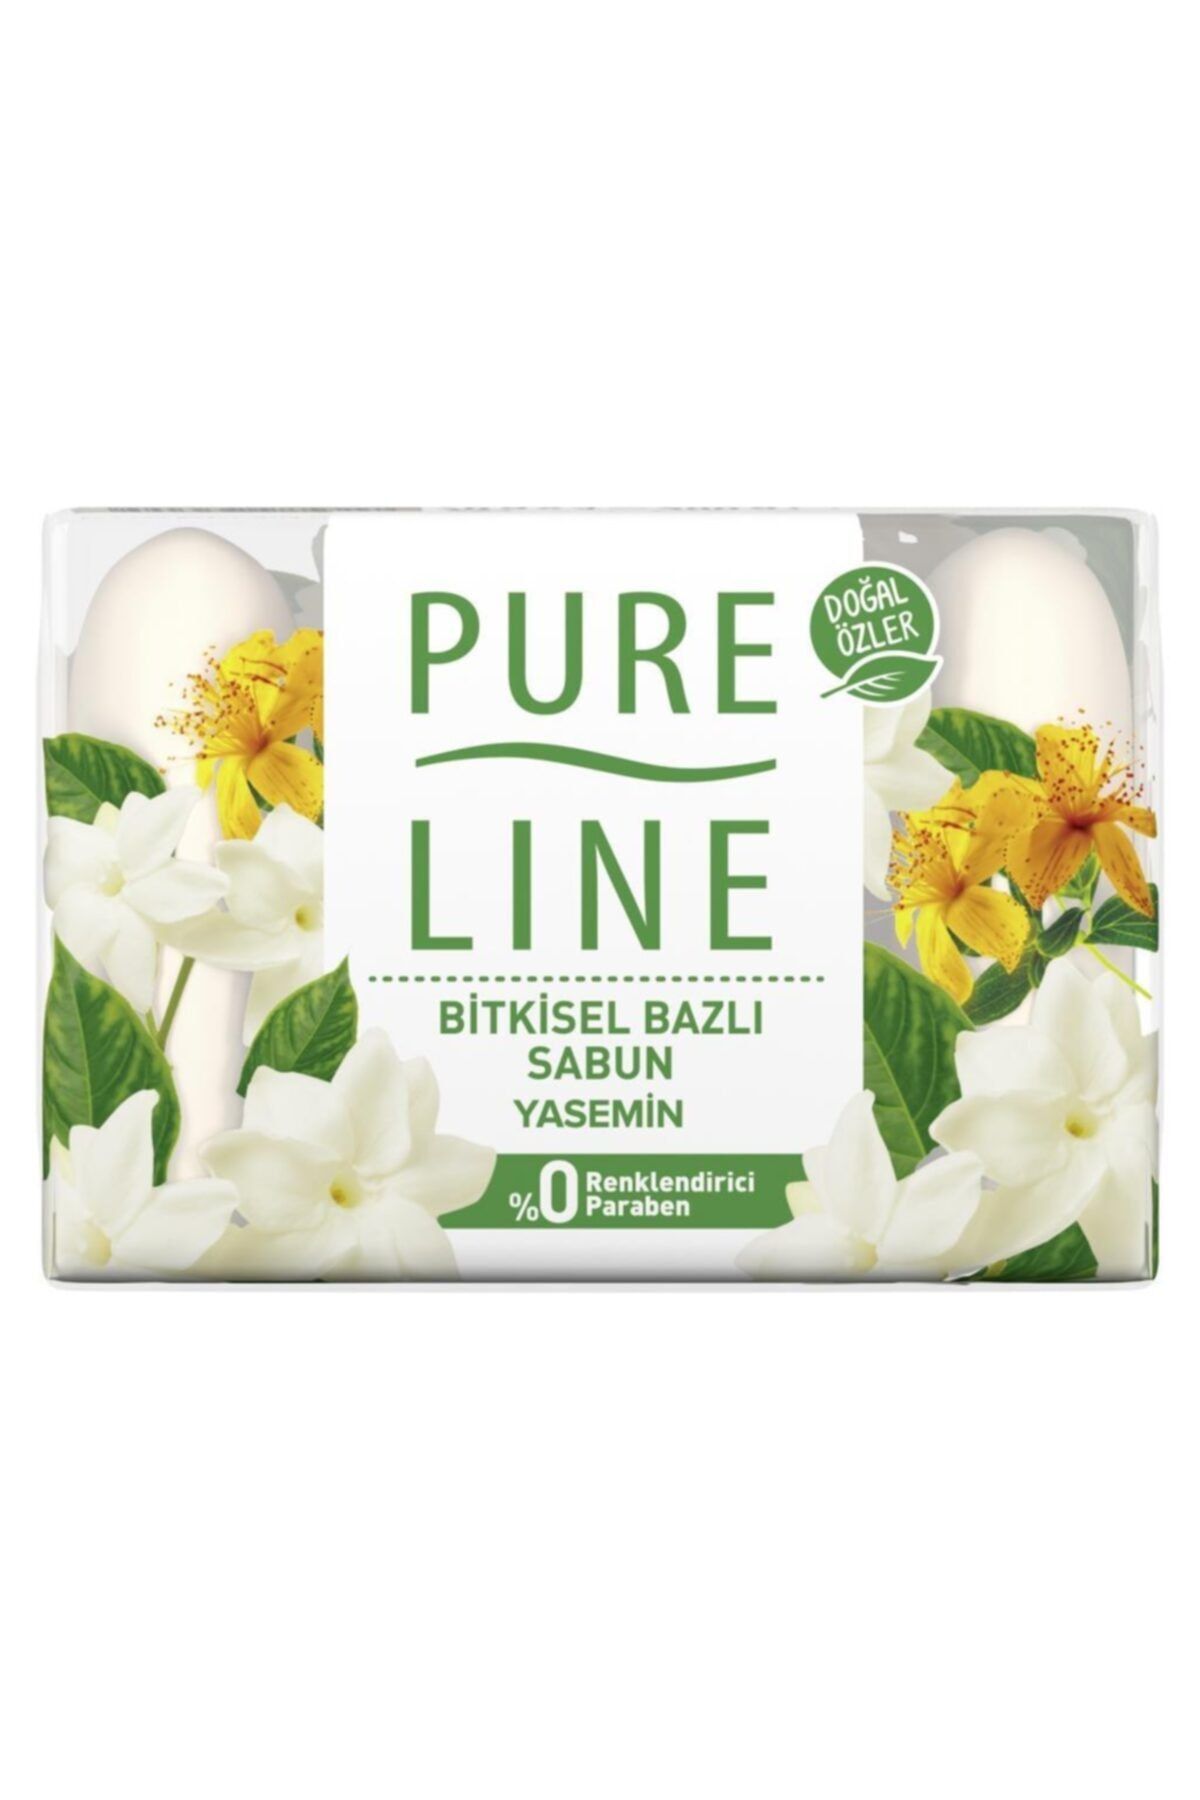 Pure Line Yasemin Doğal Özler Bitkisel Bazlı Sabun 4 X 70 gr